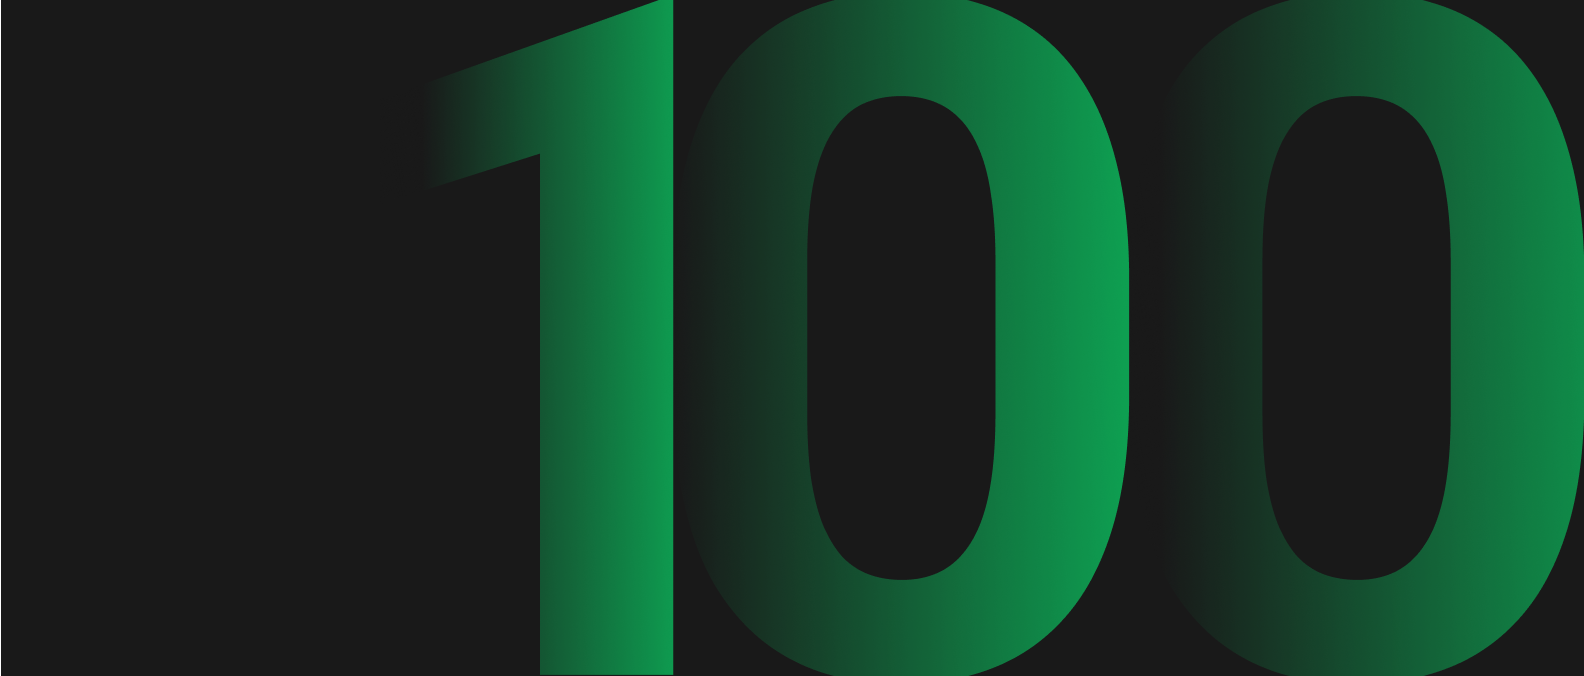 100 pares con una libreta de pedidos de 100×100 ahora están disponibles en B2Trader